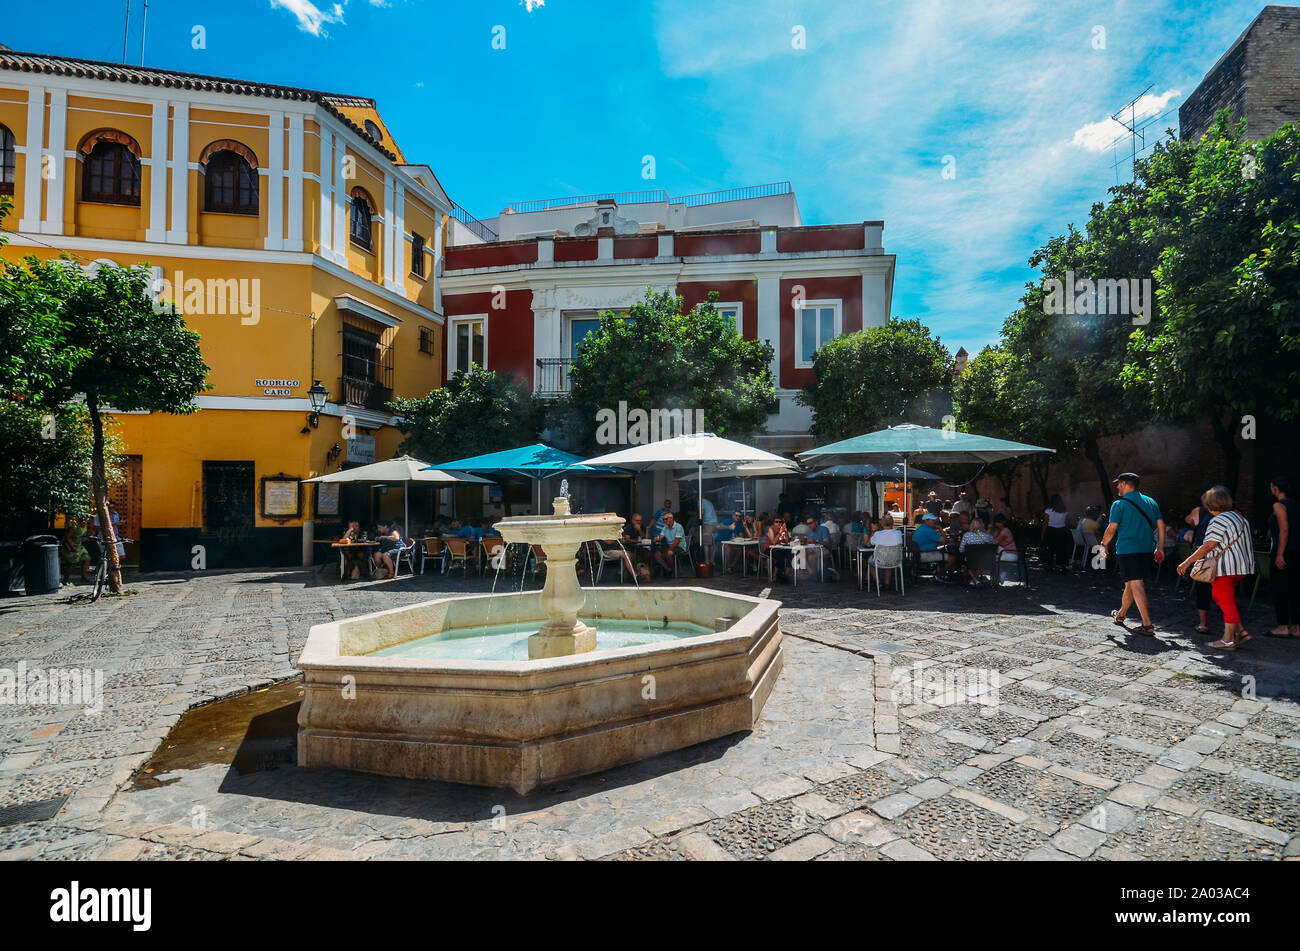 Seville, Spain - Sept 10, 2019: Tourists at Fuente de la plaza de la Alianza in the Jewish Quarter of Santa Cruz, Seville, Spain Stock Photo